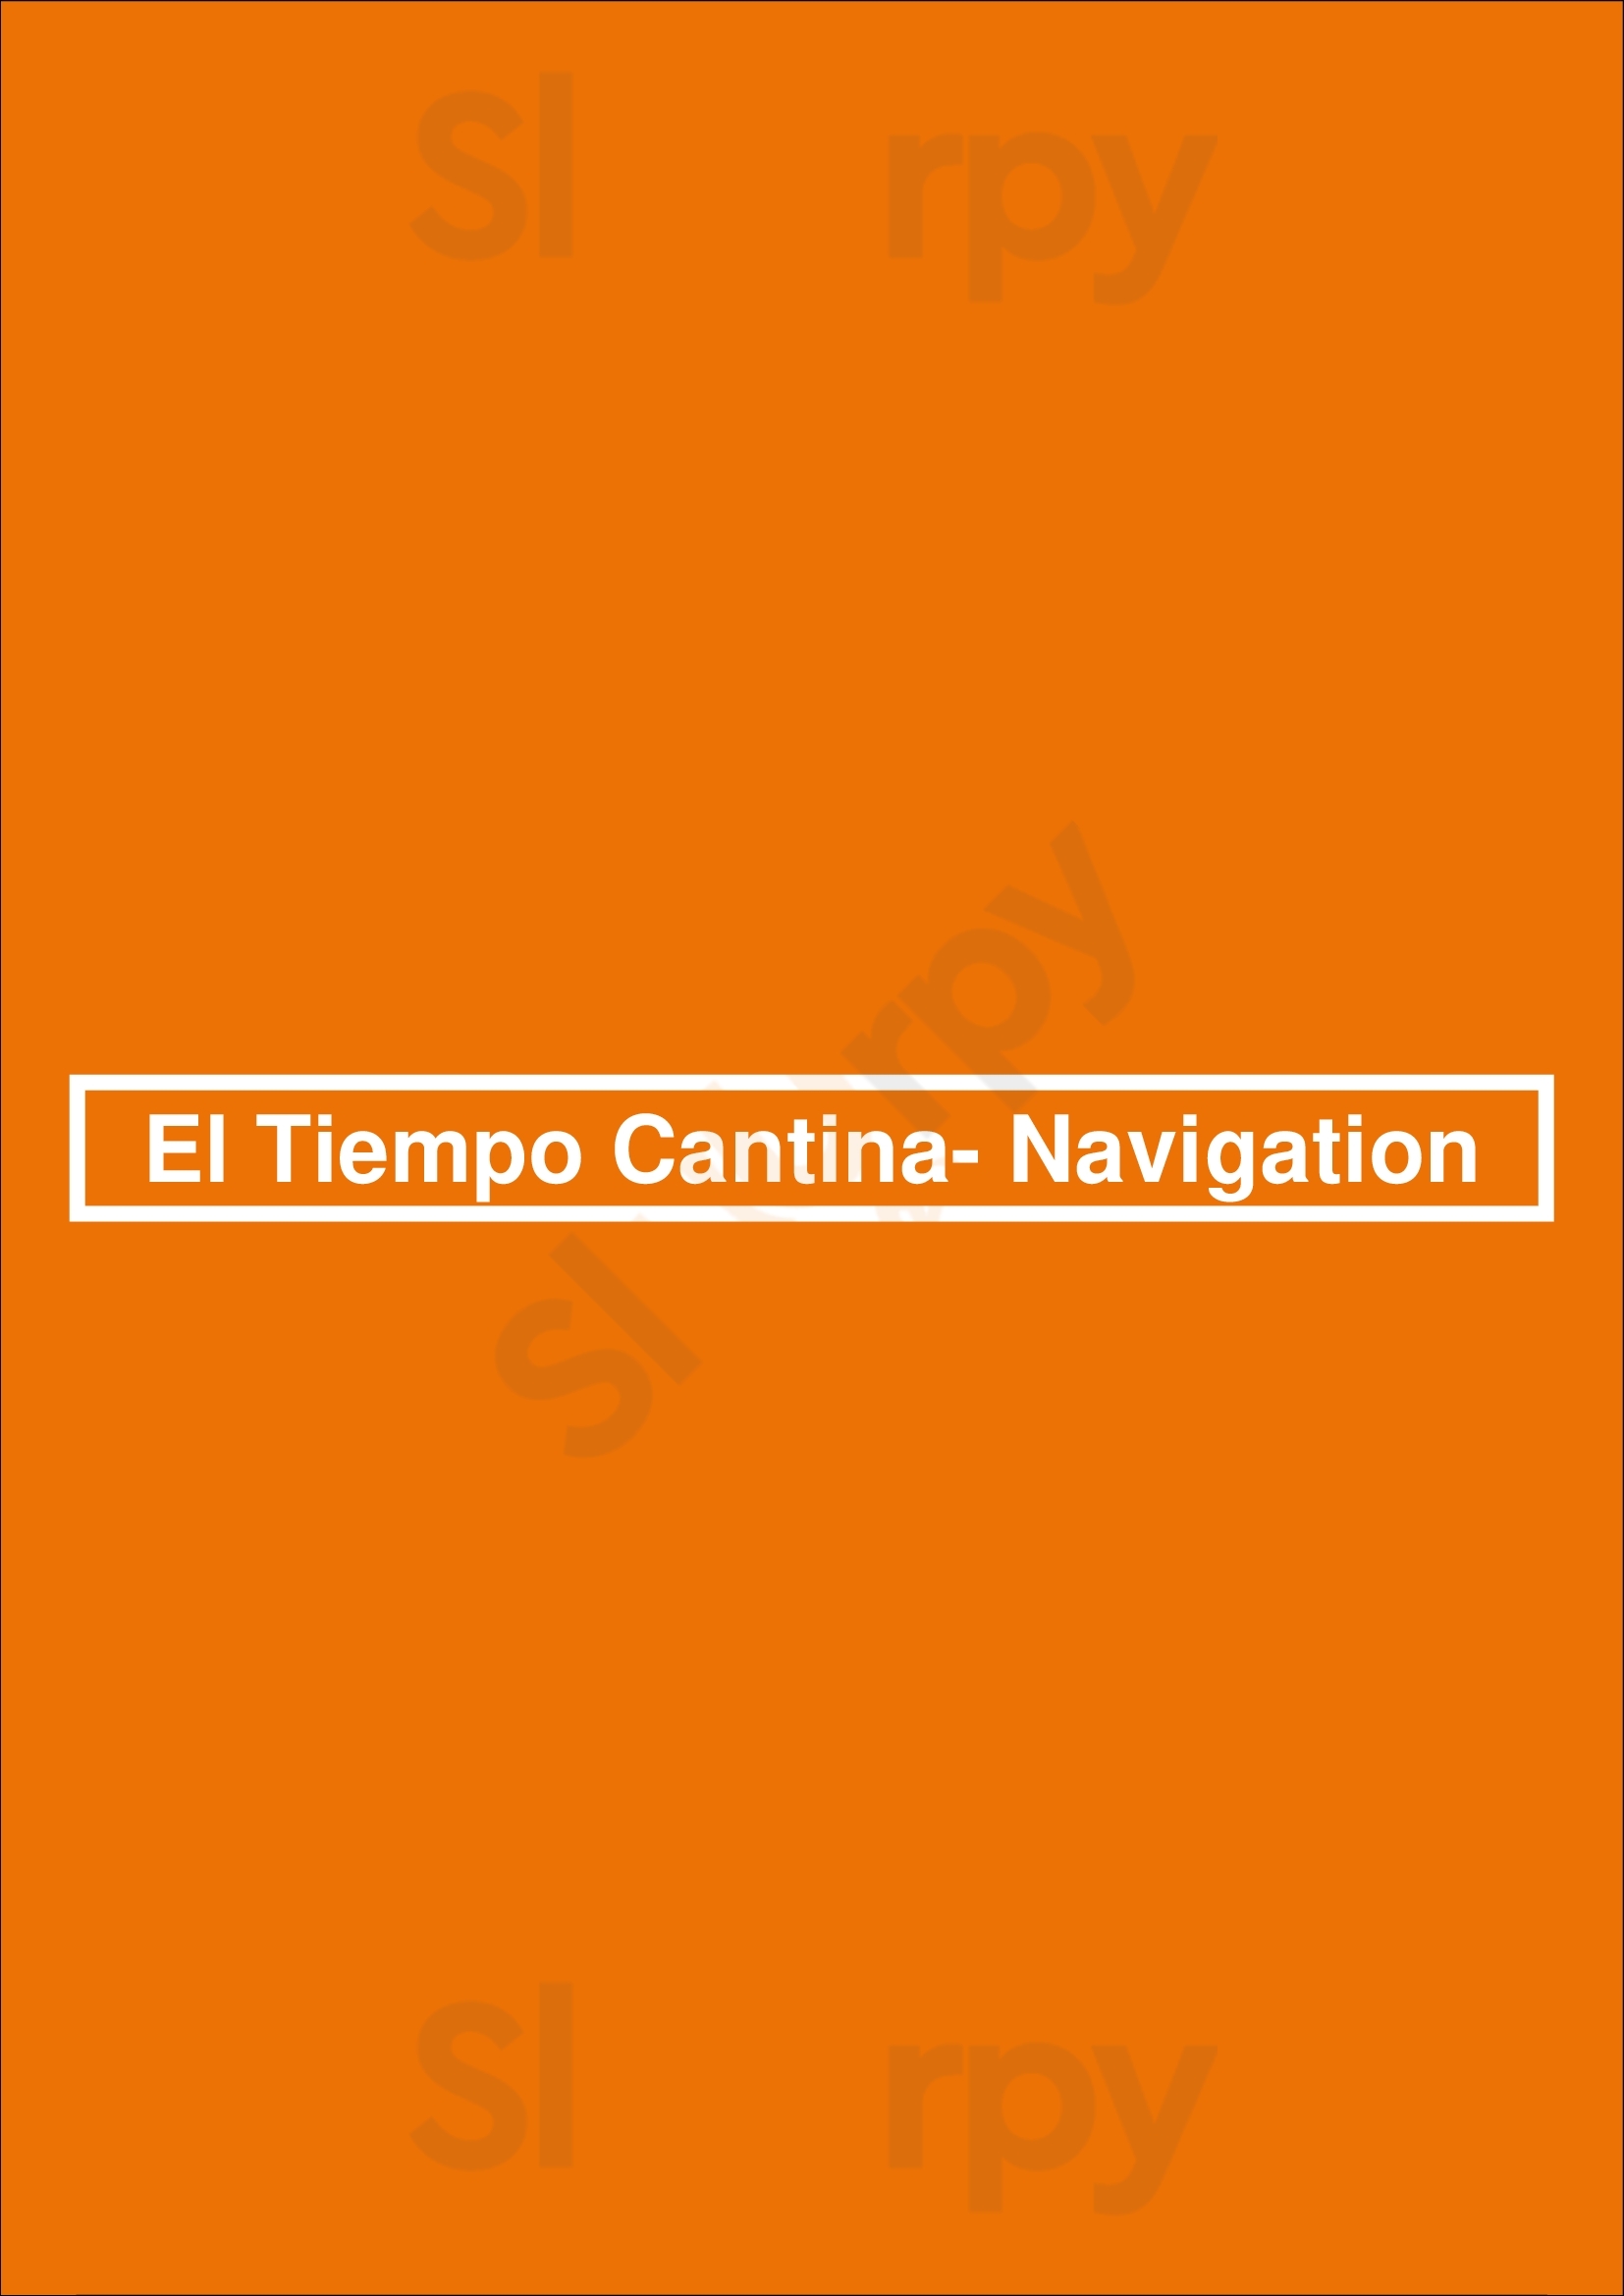 El Tiempo Cantina- Navigation Houston Menu - 1